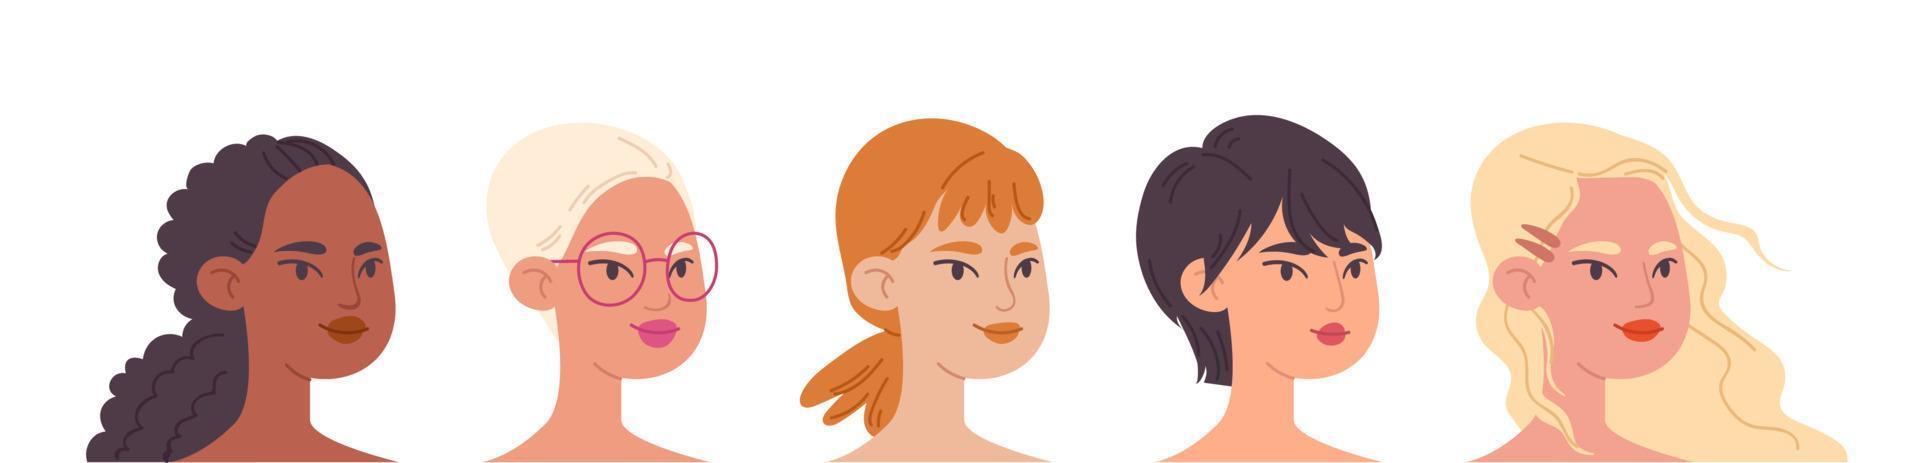 eine Reihe verschiedener weiblicher Gesichter mit unterschiedlichen Frisuren und Nationalitäten. Vektor-Illustration von weiblichen niedlichen Köpfen auf weißem Hintergrund. vektor